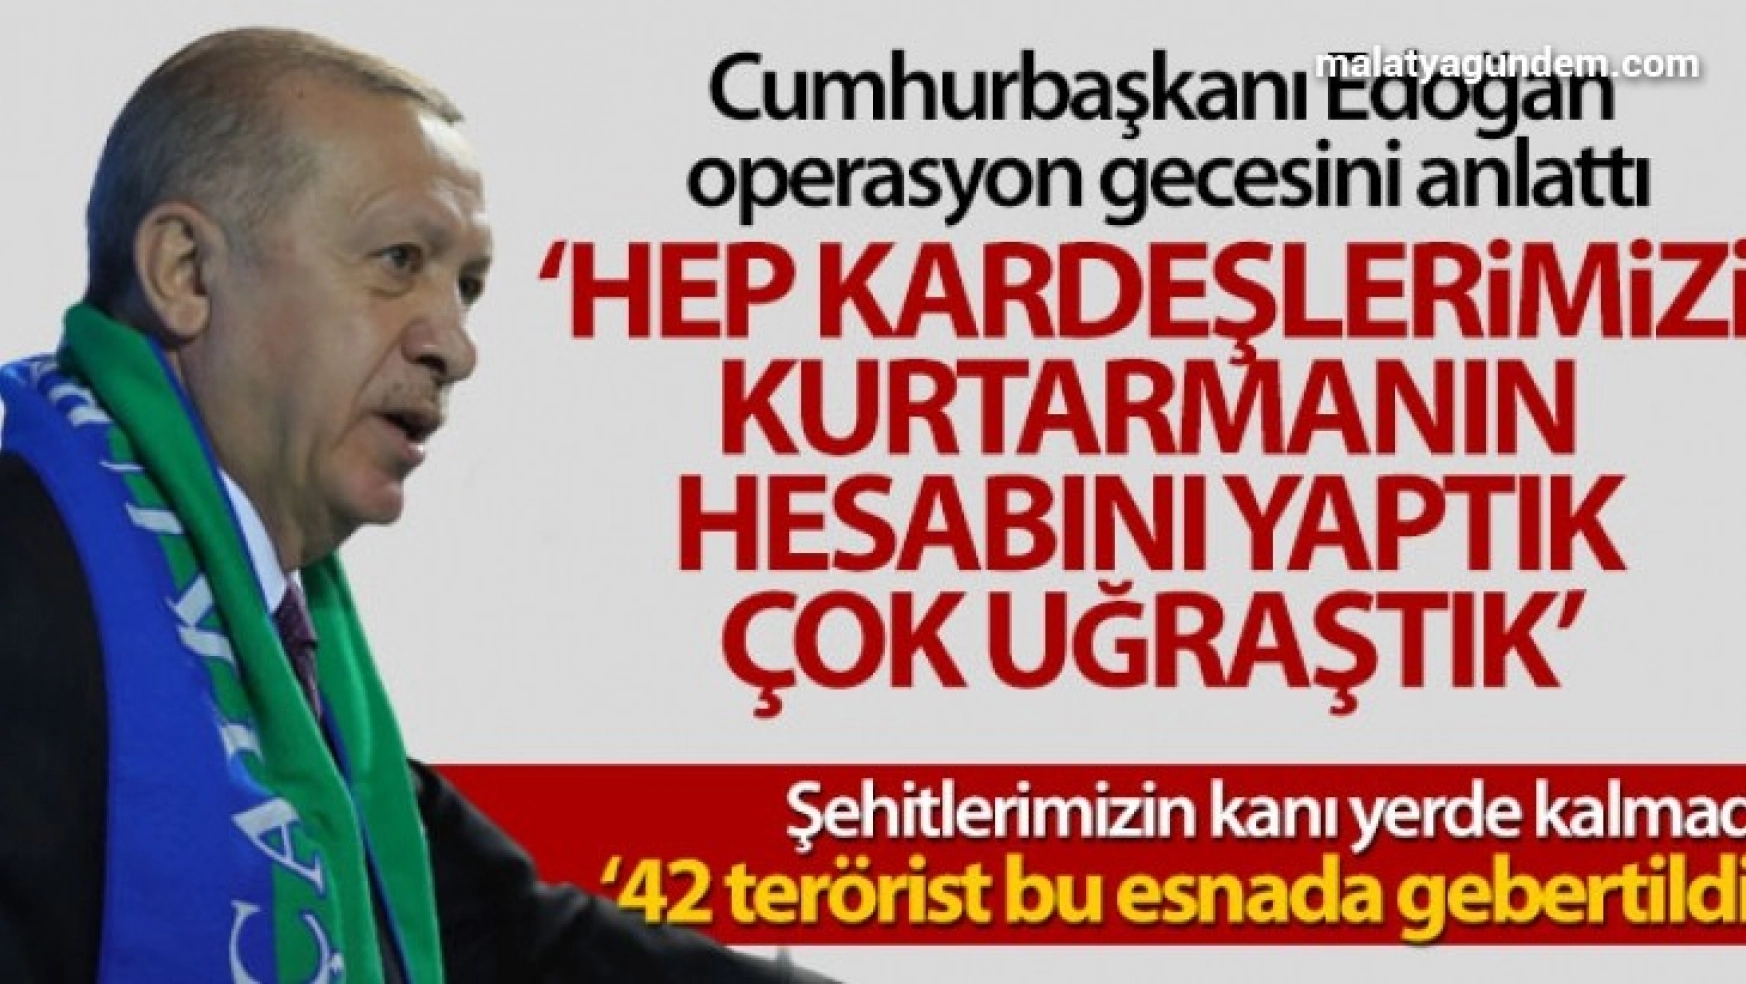 Cumhurbaşkanı Erdoğan: 'Şehit edilen kardeşlerimizi kurtarmak için çok uğraştık'